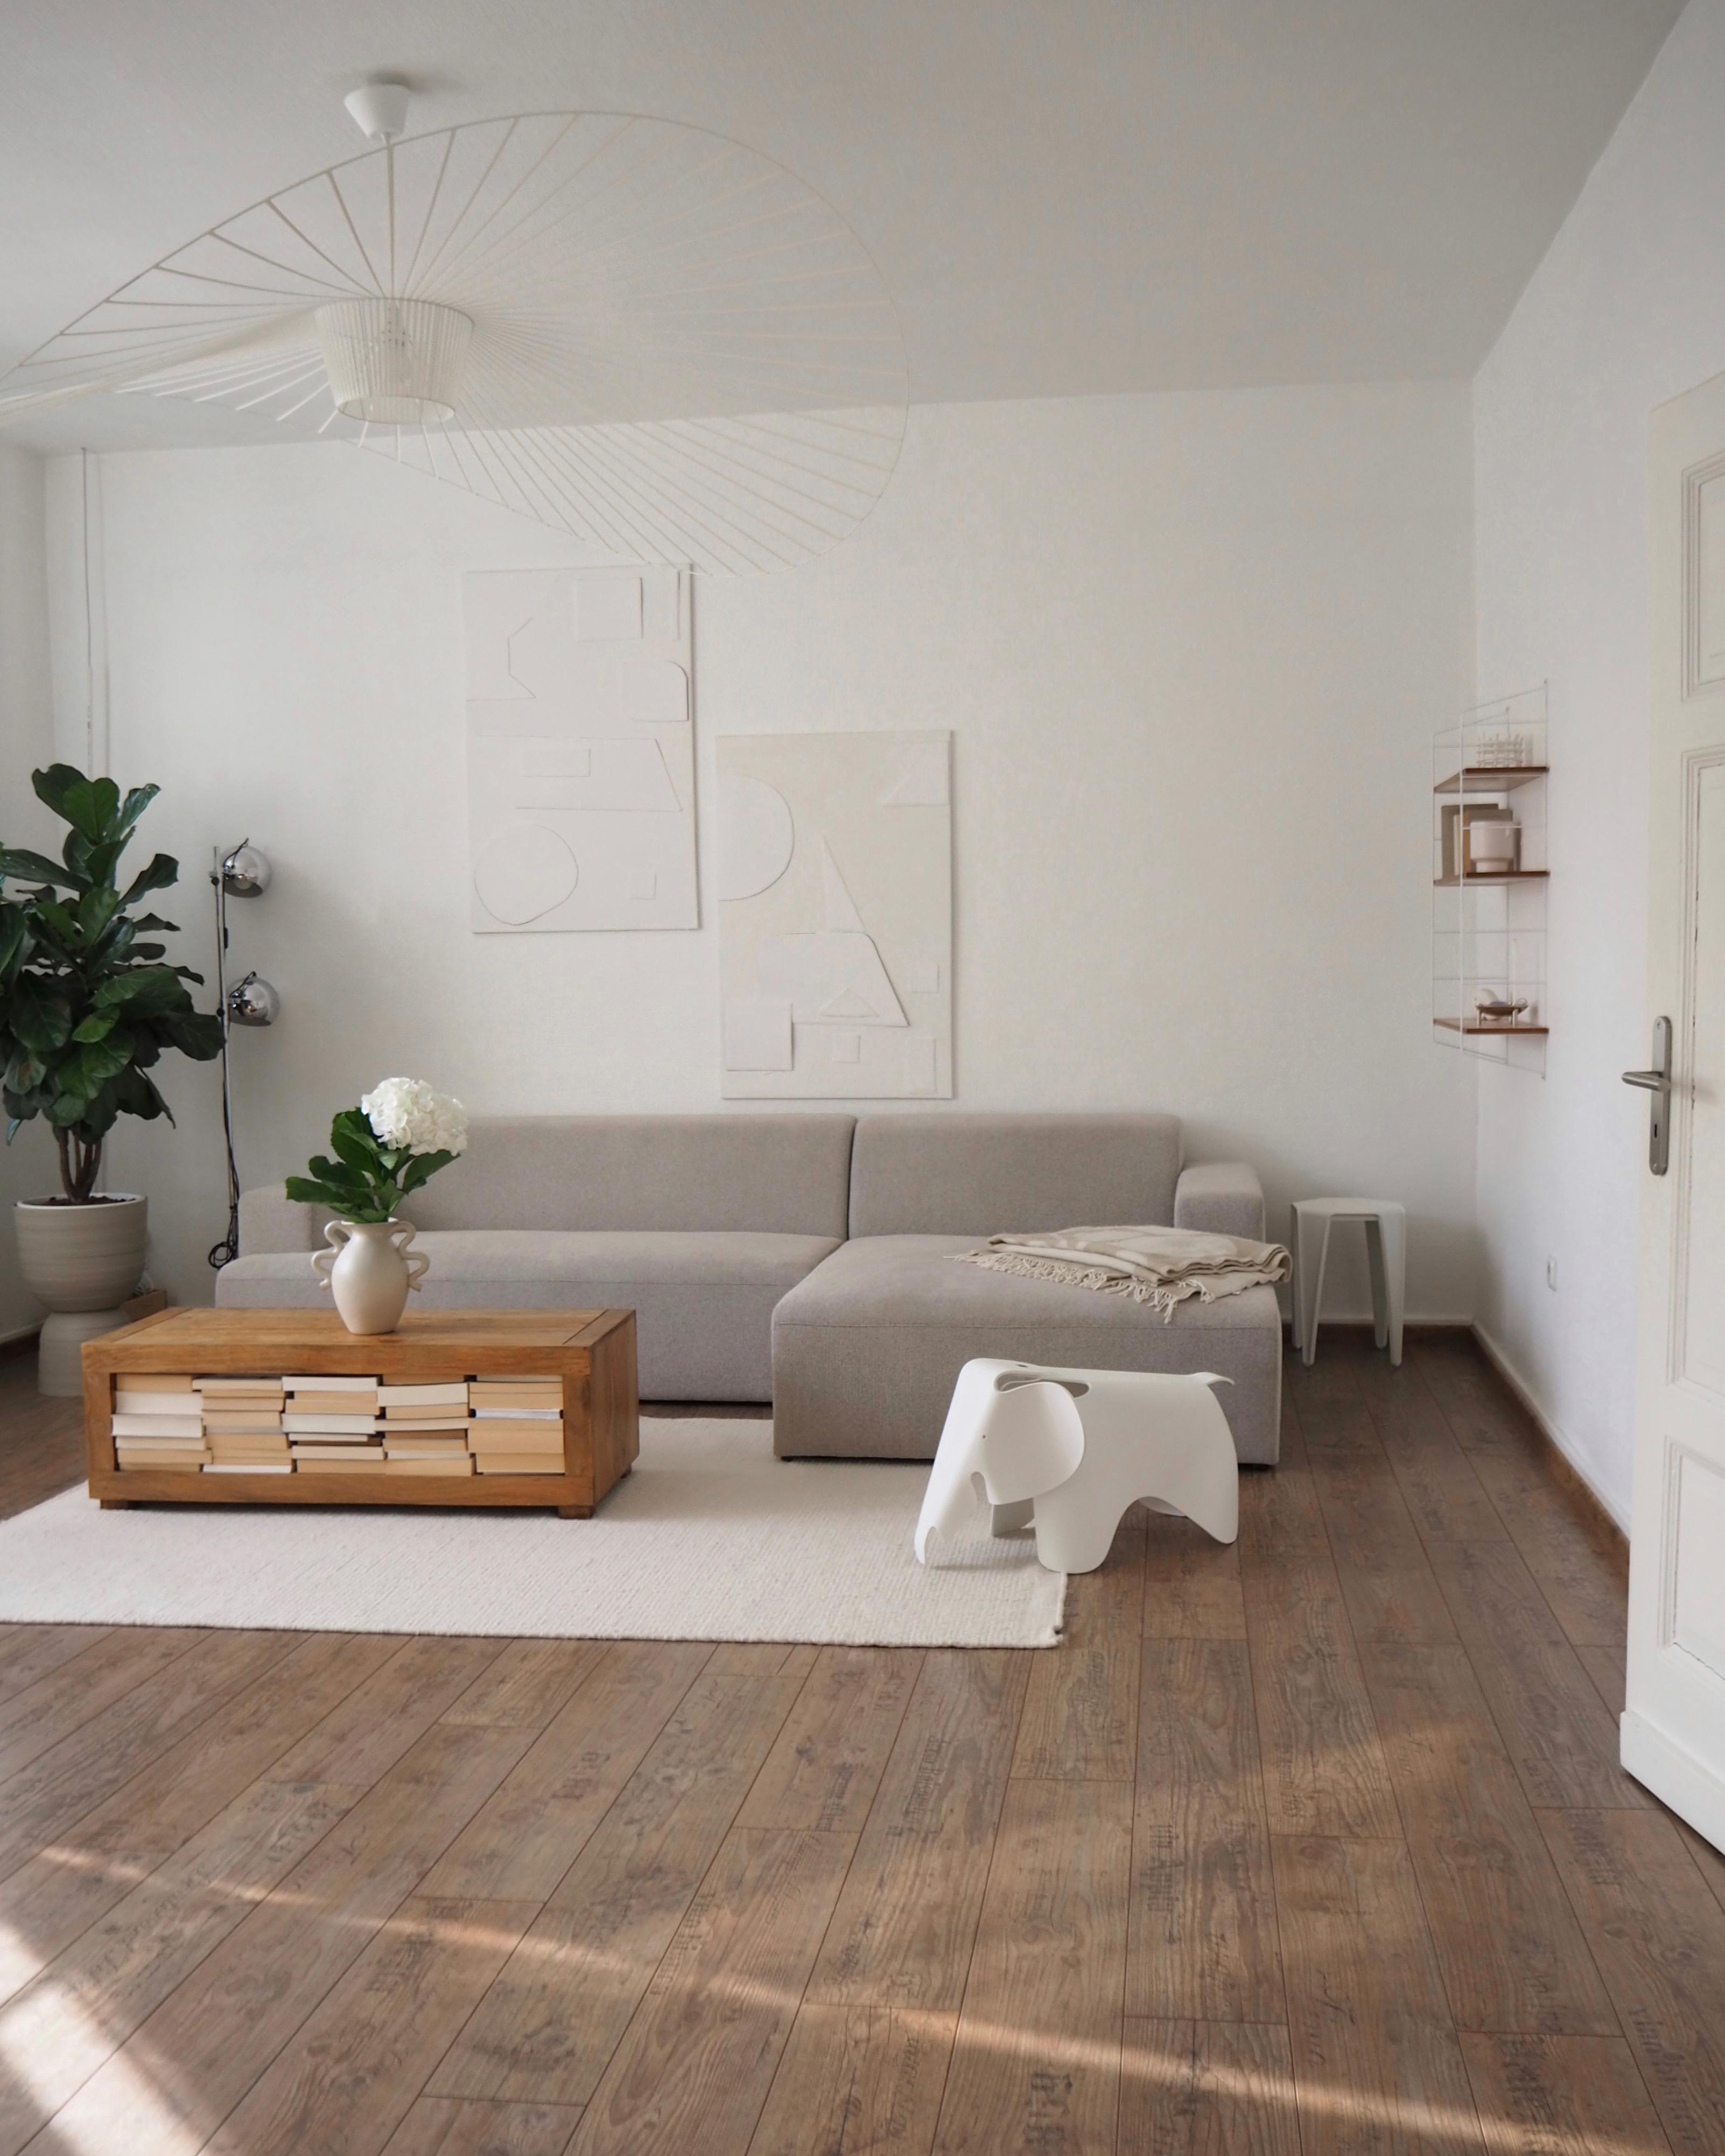 #vitra #wohnzimmer #bysidde #sofa #deckenlampe #stringregal #couchtisch #vitraelefant #bücher #pflanzen #diybild 